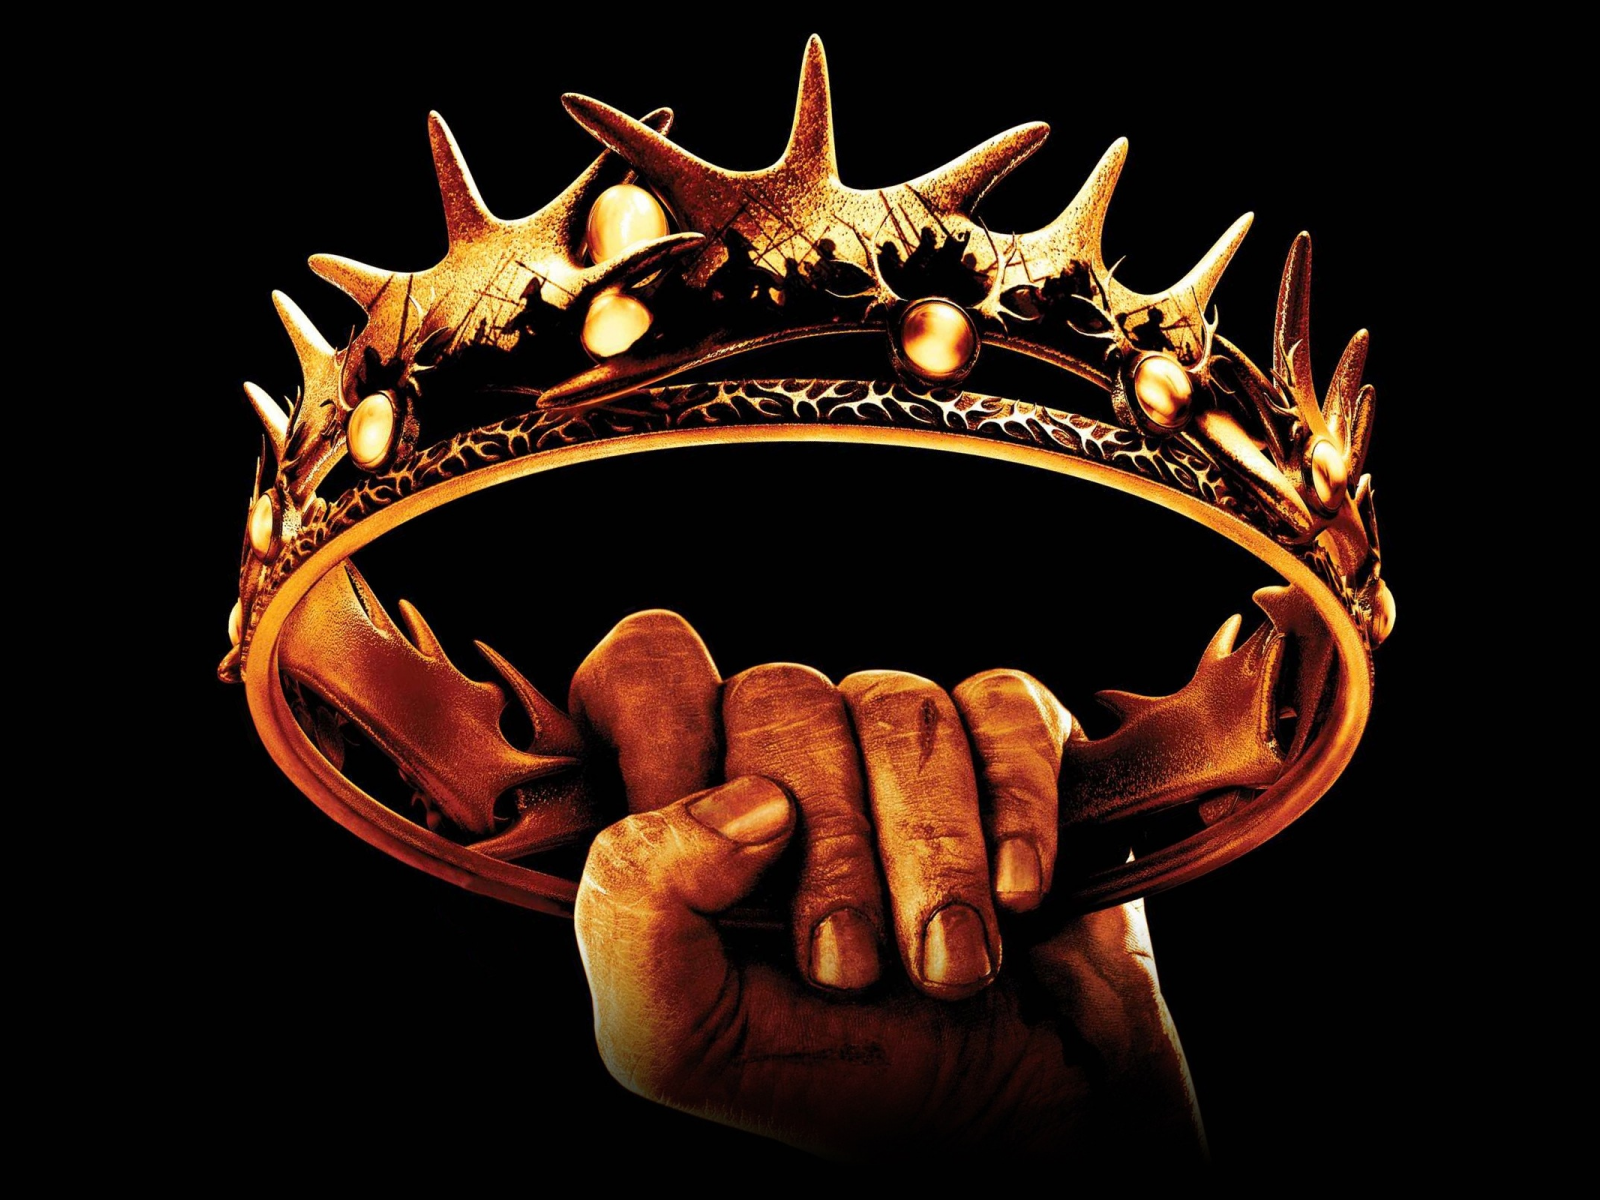 Game of thrones, crown, clash of kings, tv series